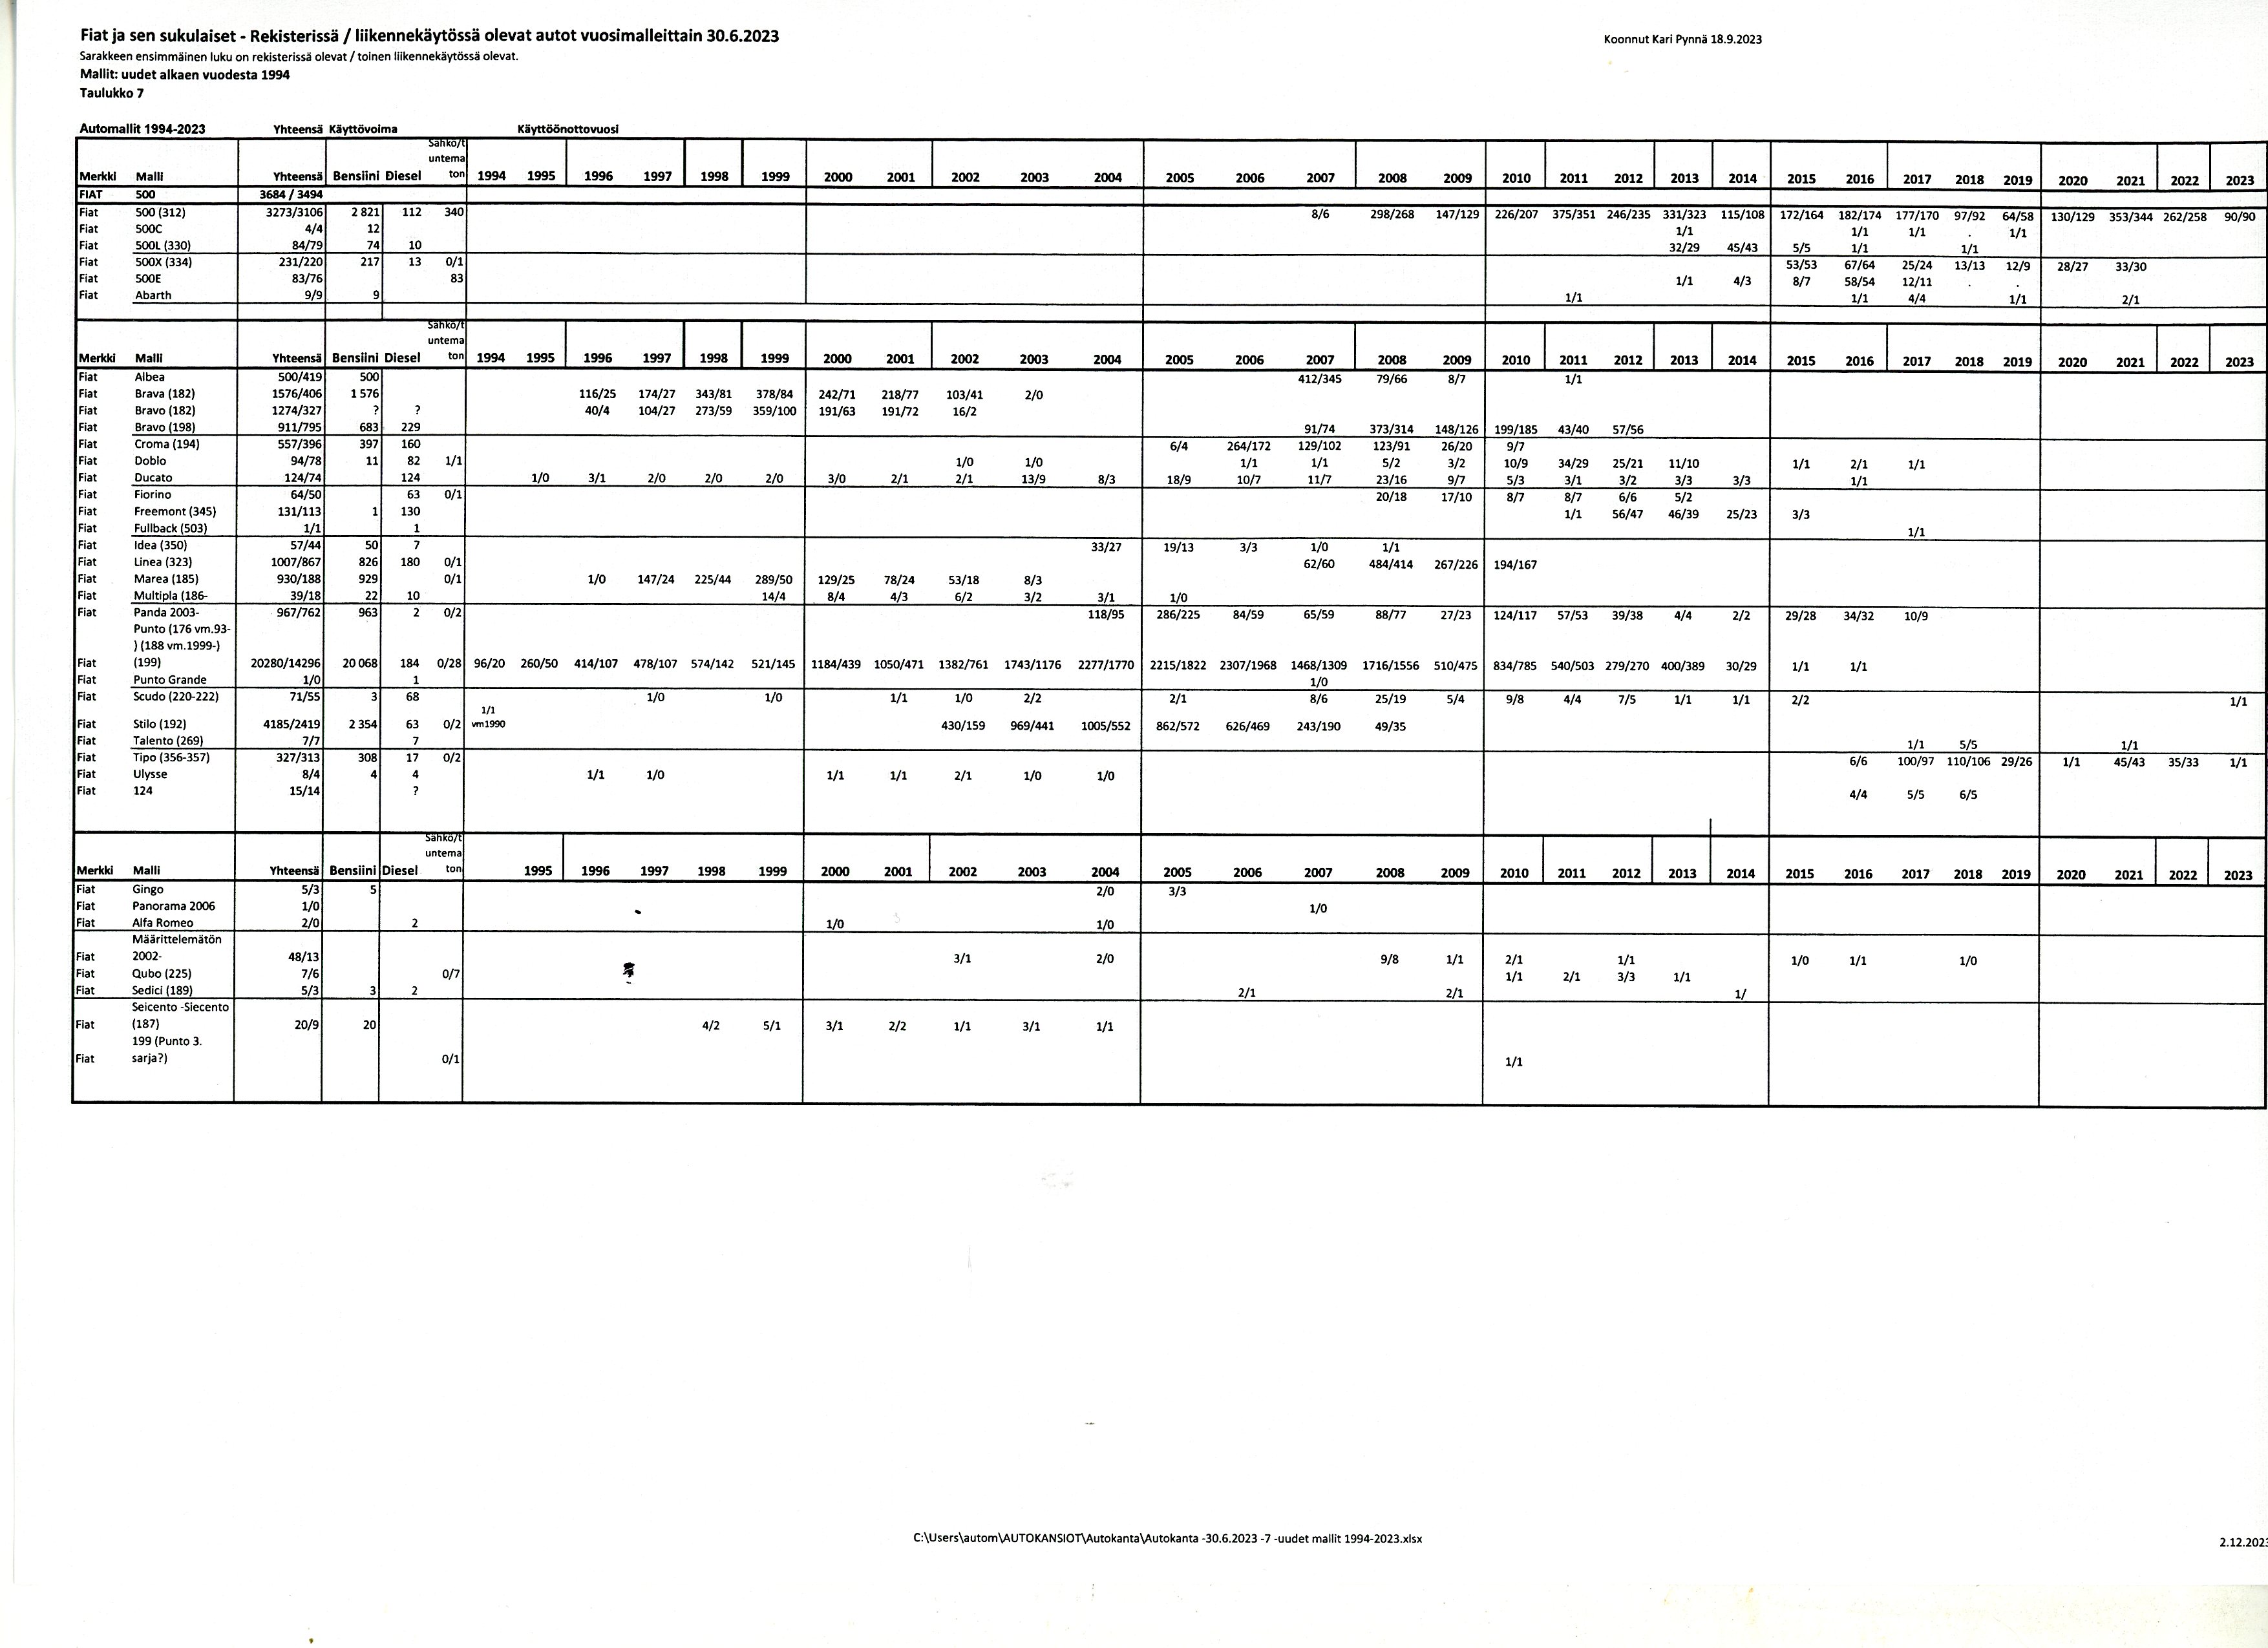 Autokanta 30.6.2023 - uudet mallit 1994-2023